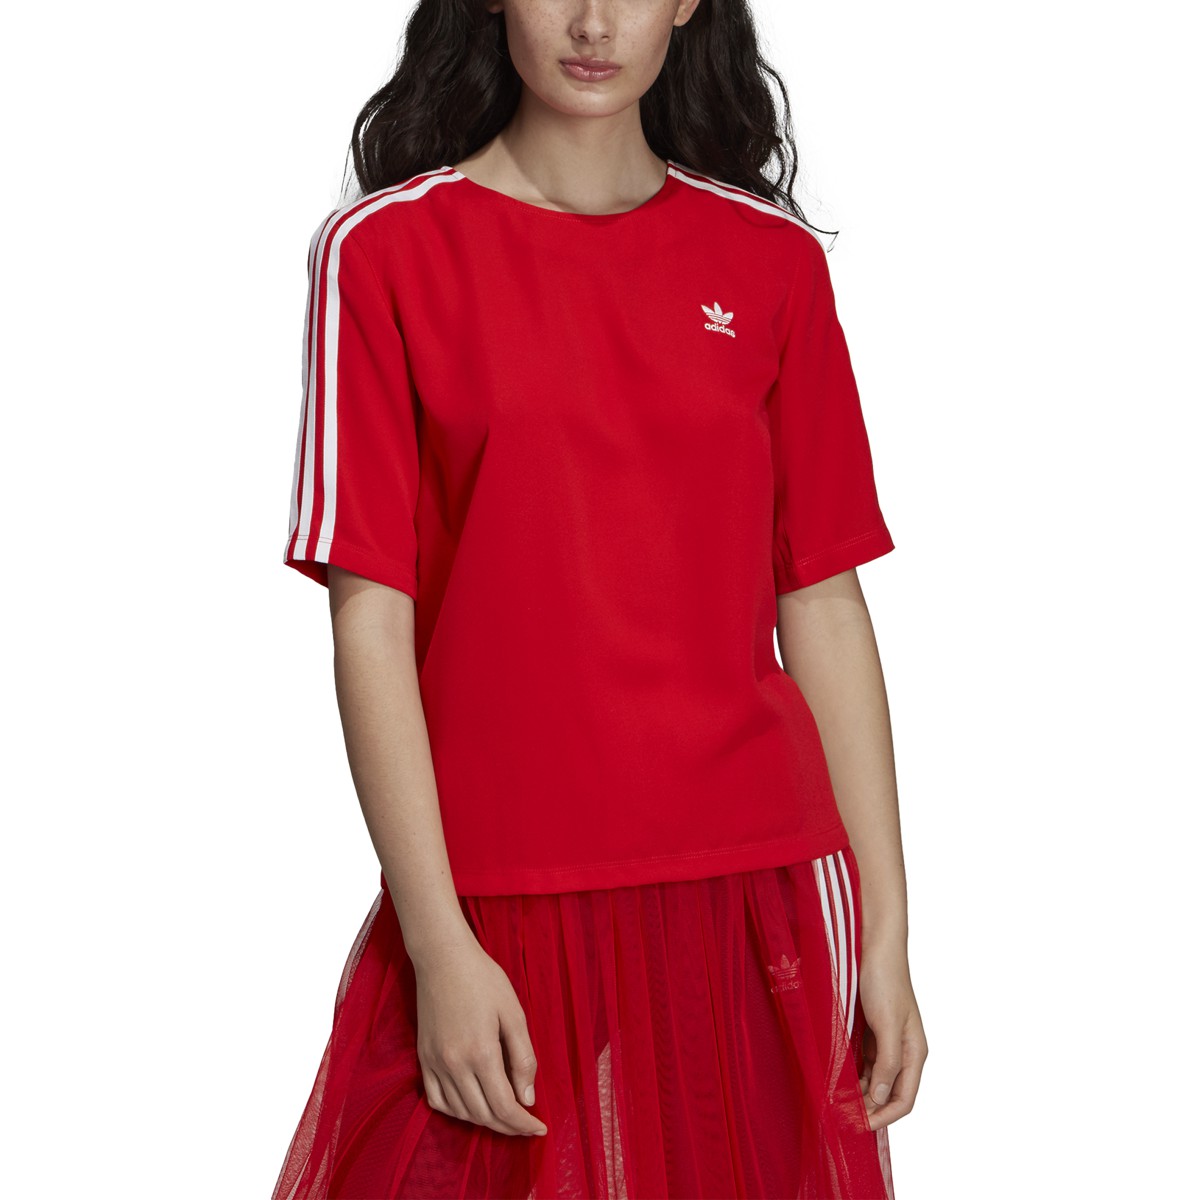 Oh jee chocola geleider Adidas Women's Originals 3-stripes T-shirt Red DW3888 | eBay